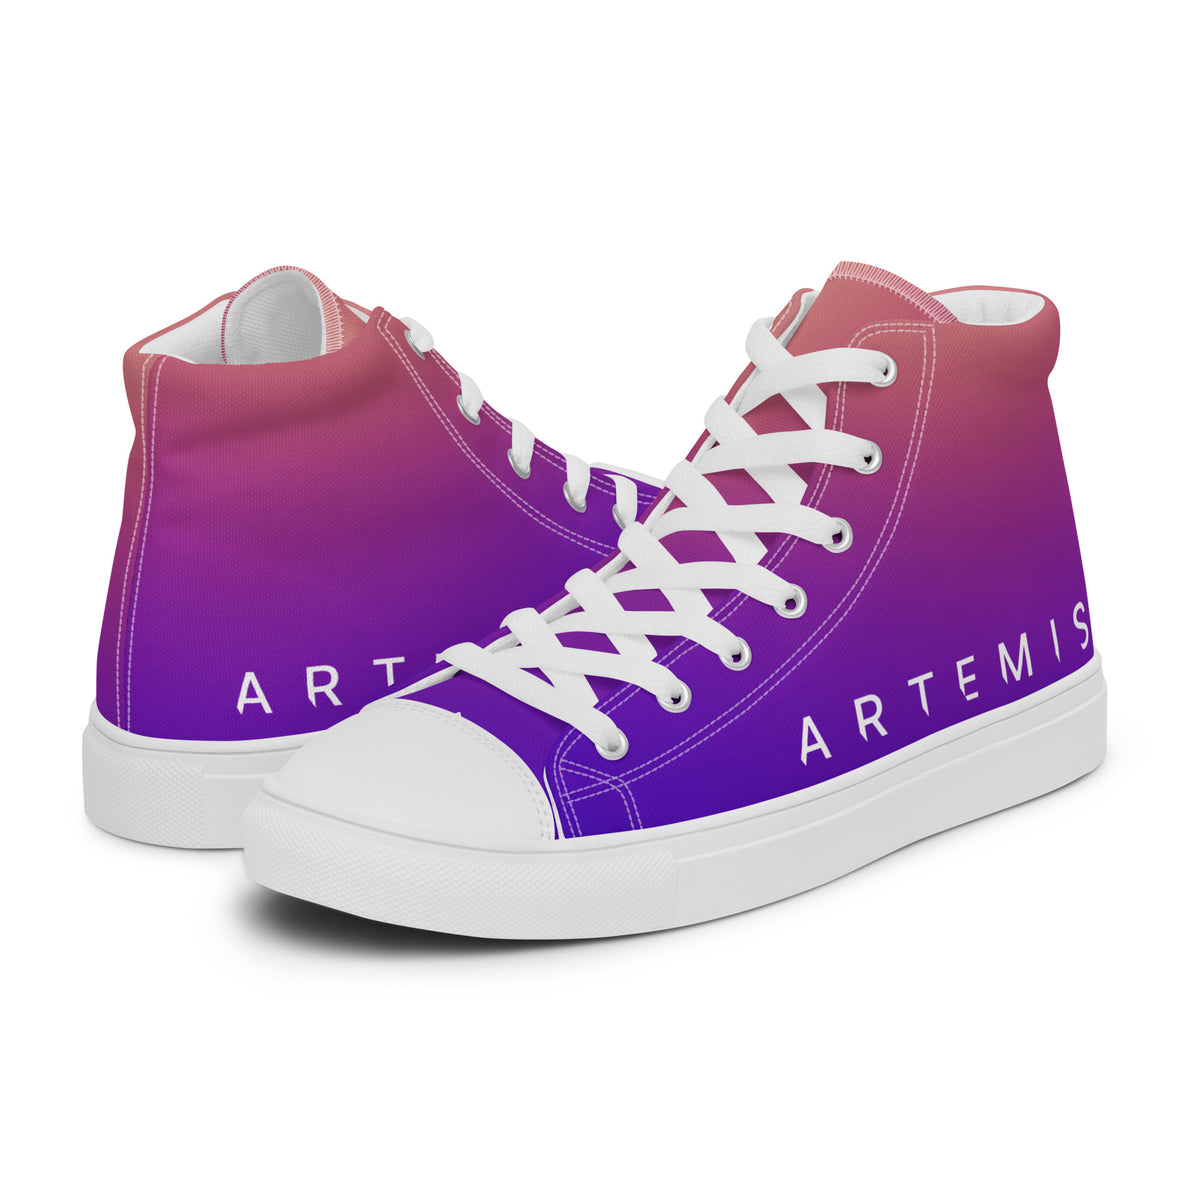 Artemis Generation Women’s High top canvas shoes